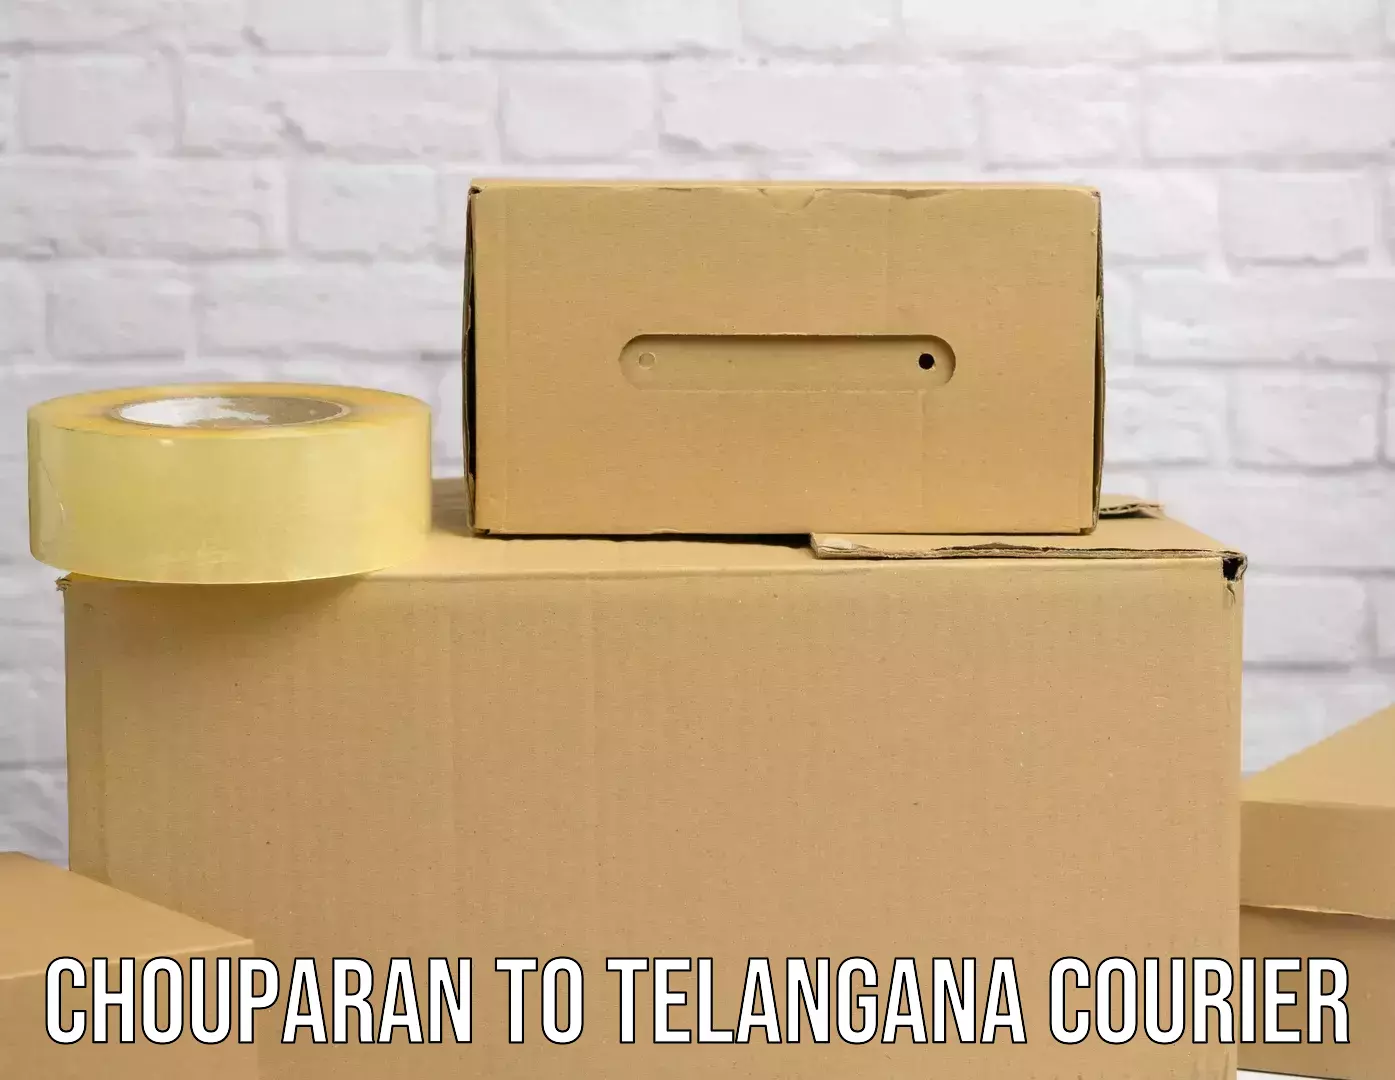 Seamless shipping service Chouparan to Telangana